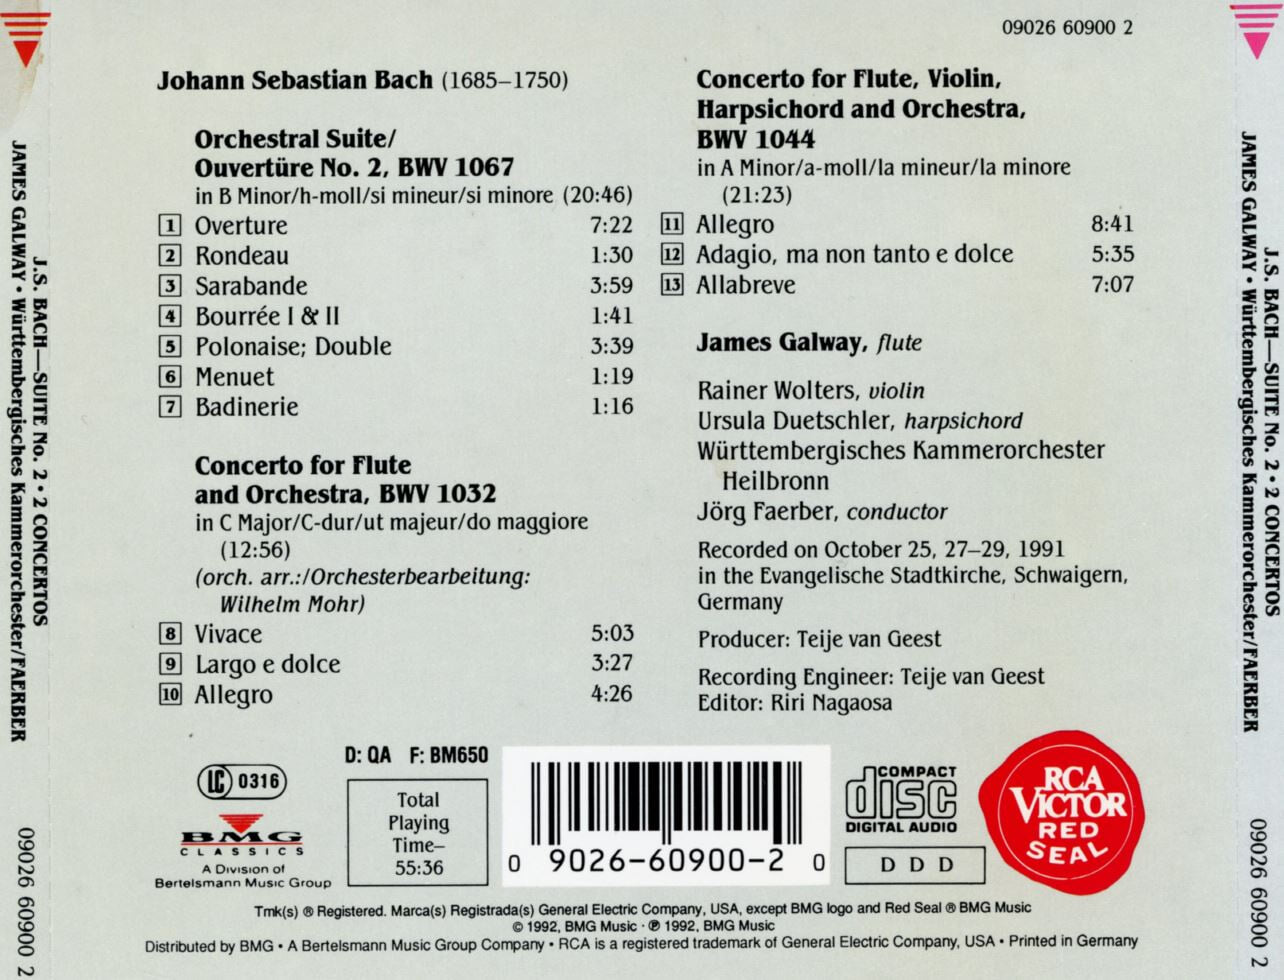 제임스 골웨이 - James Galway - Bach Suite No. 2 Concerto For Flute, Violin, & Harpsichord [독일발매]